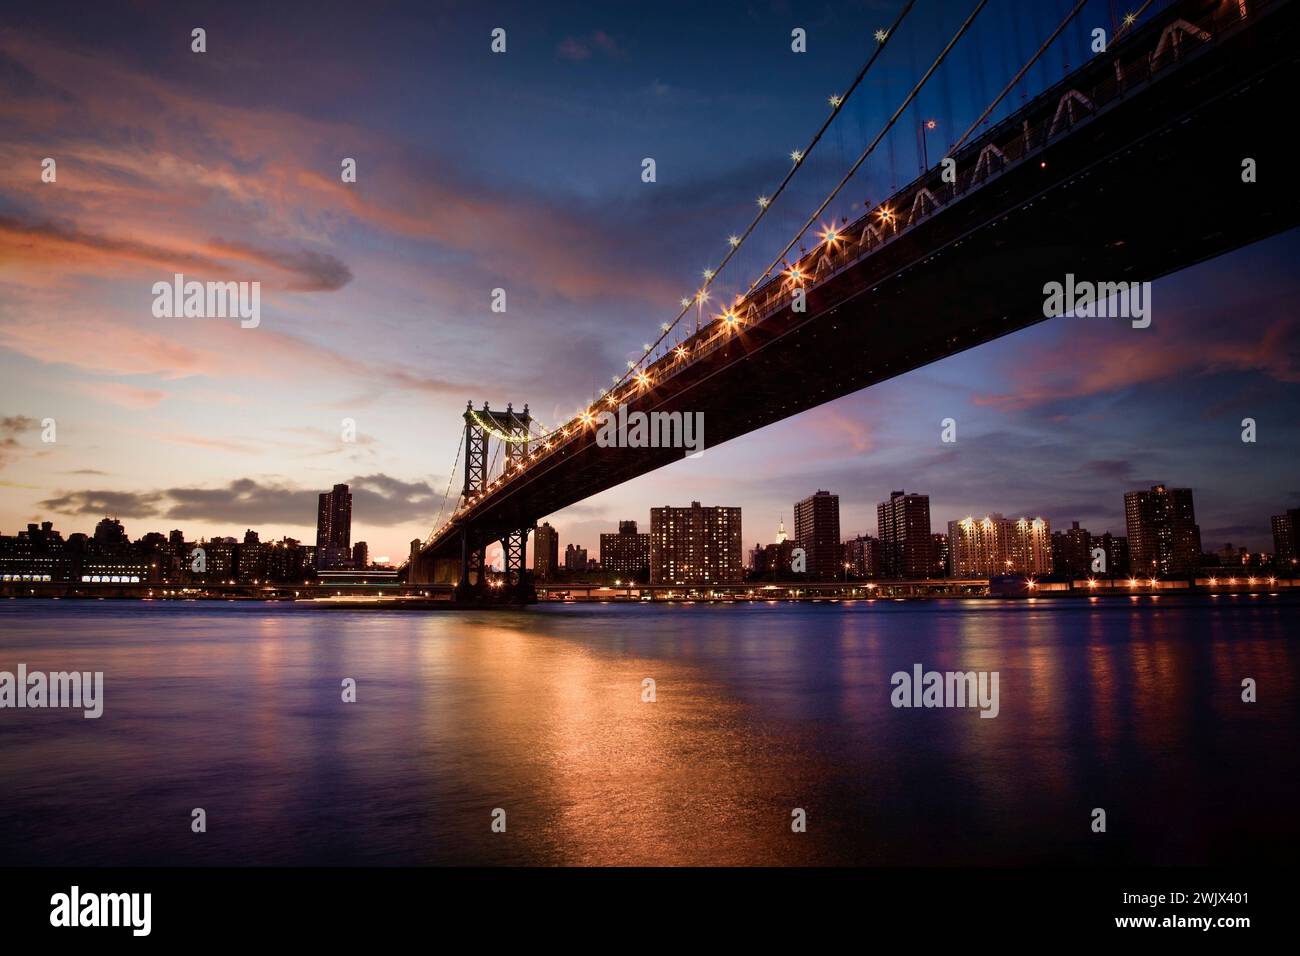 Le pont suspendu de Manhattan mène à Lower Manhattan au-dessus de l'East River depuis Brooklyn, New York. Banque D'Images